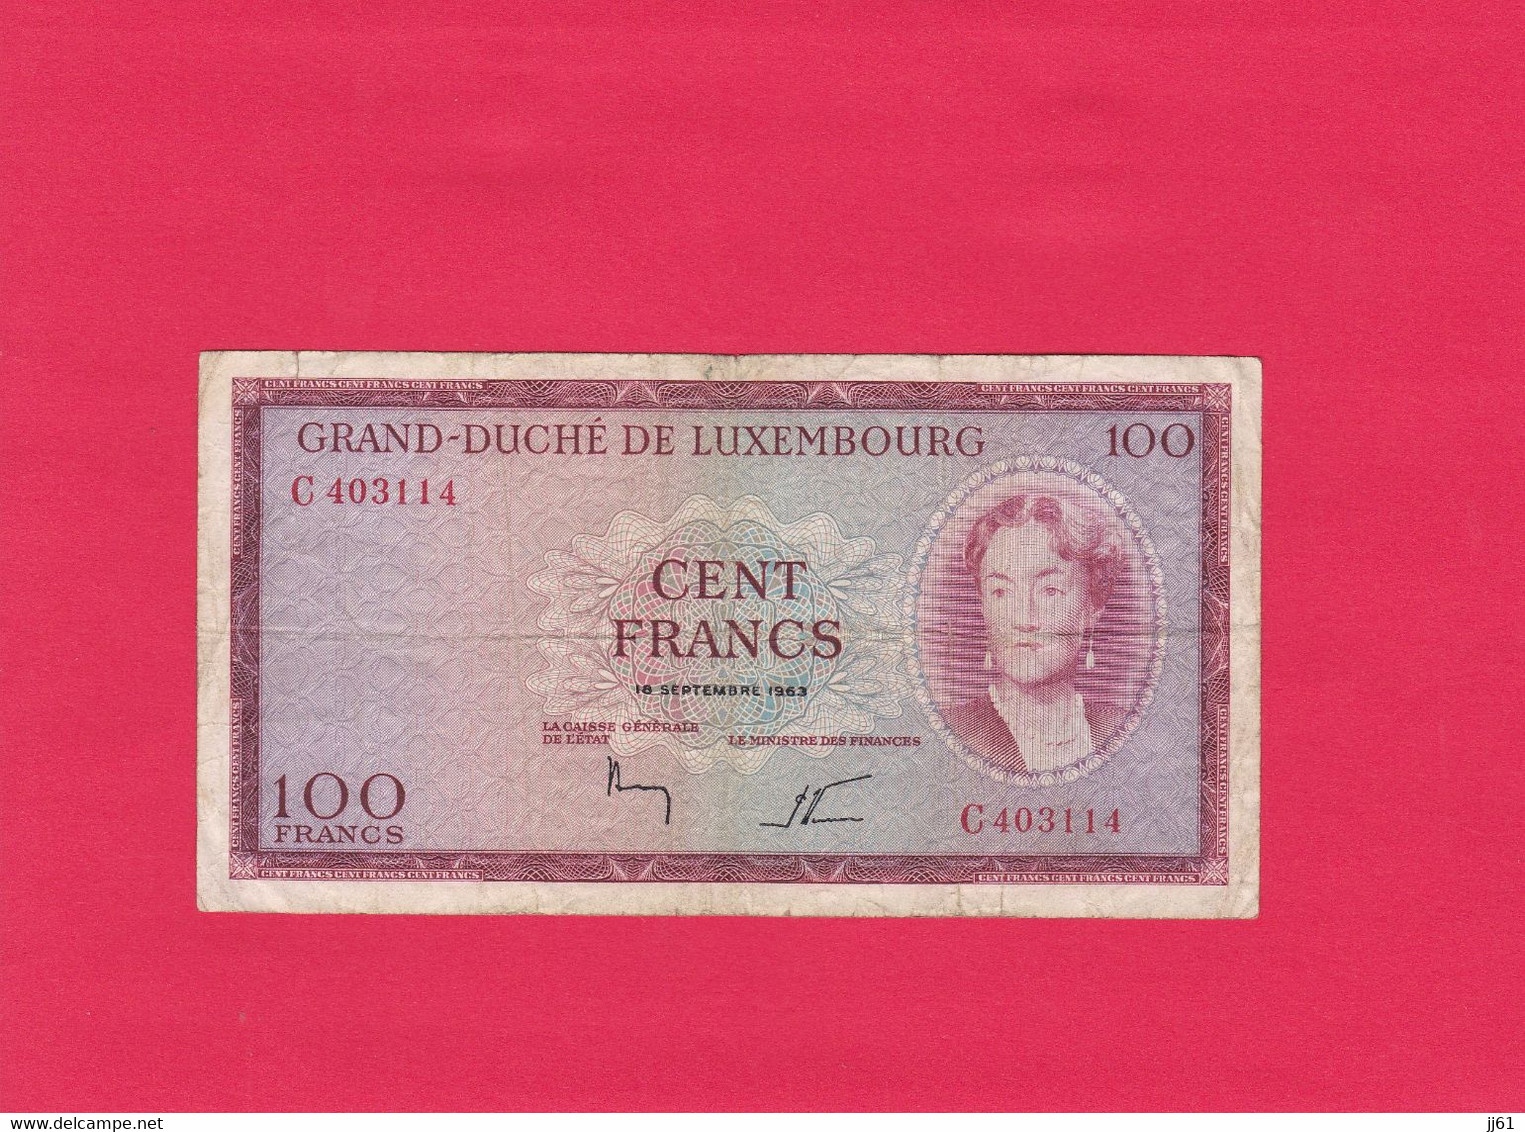 BILLET GRAND DUCHE DE LUXEMBOURG CENT FRANCS N° C403114 18 SEPTEMBRE 1963 ETAT D USAGE PLIURES AU MILIEU TACHES NORMAL - Luxemburg